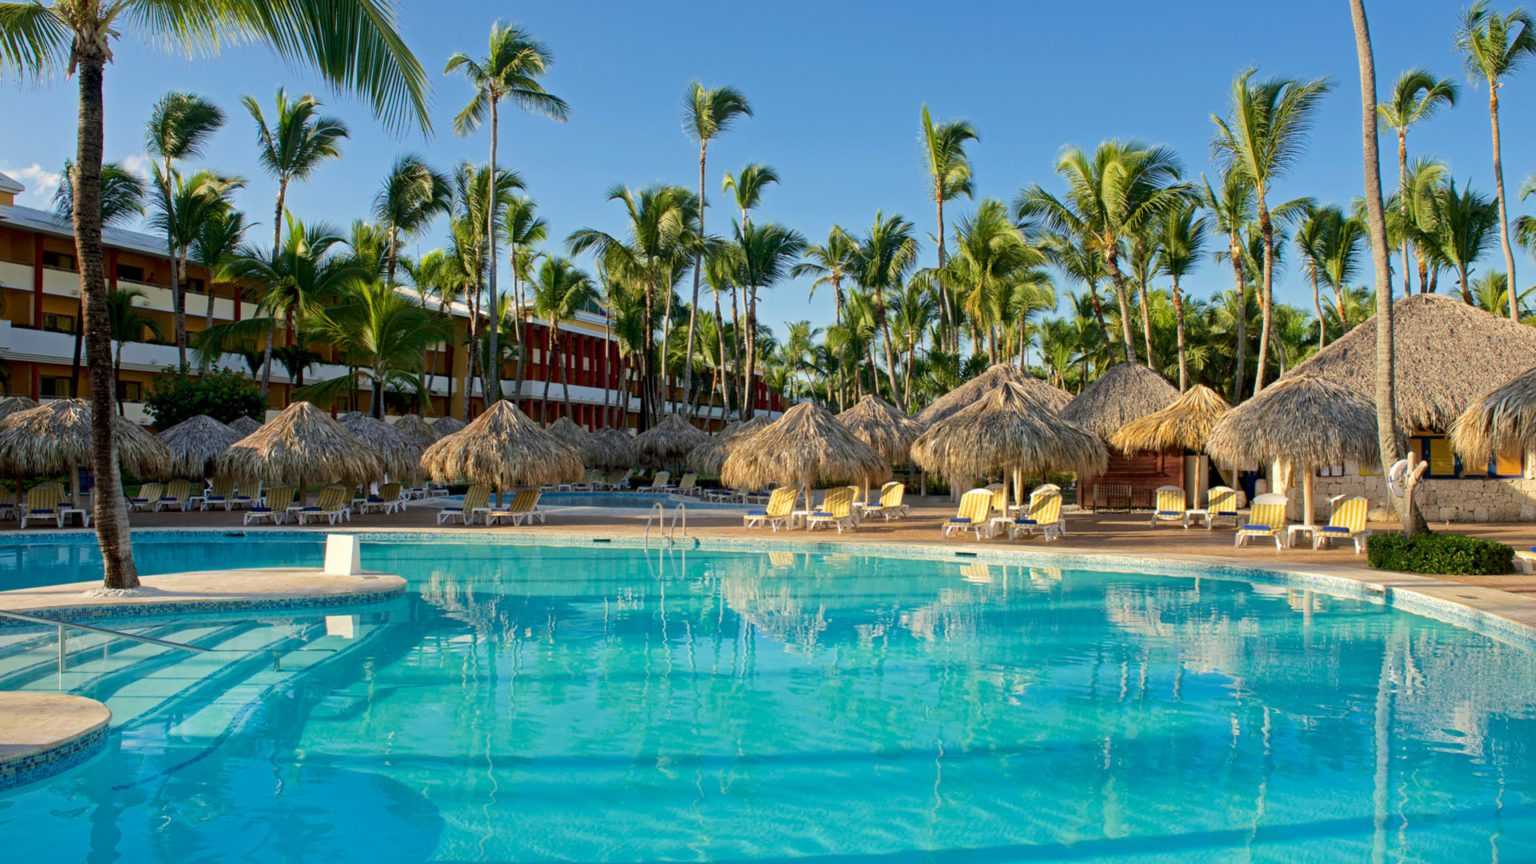 Пунта-кана в доминикане — солнце, пляжи и релакс - kuku.travel